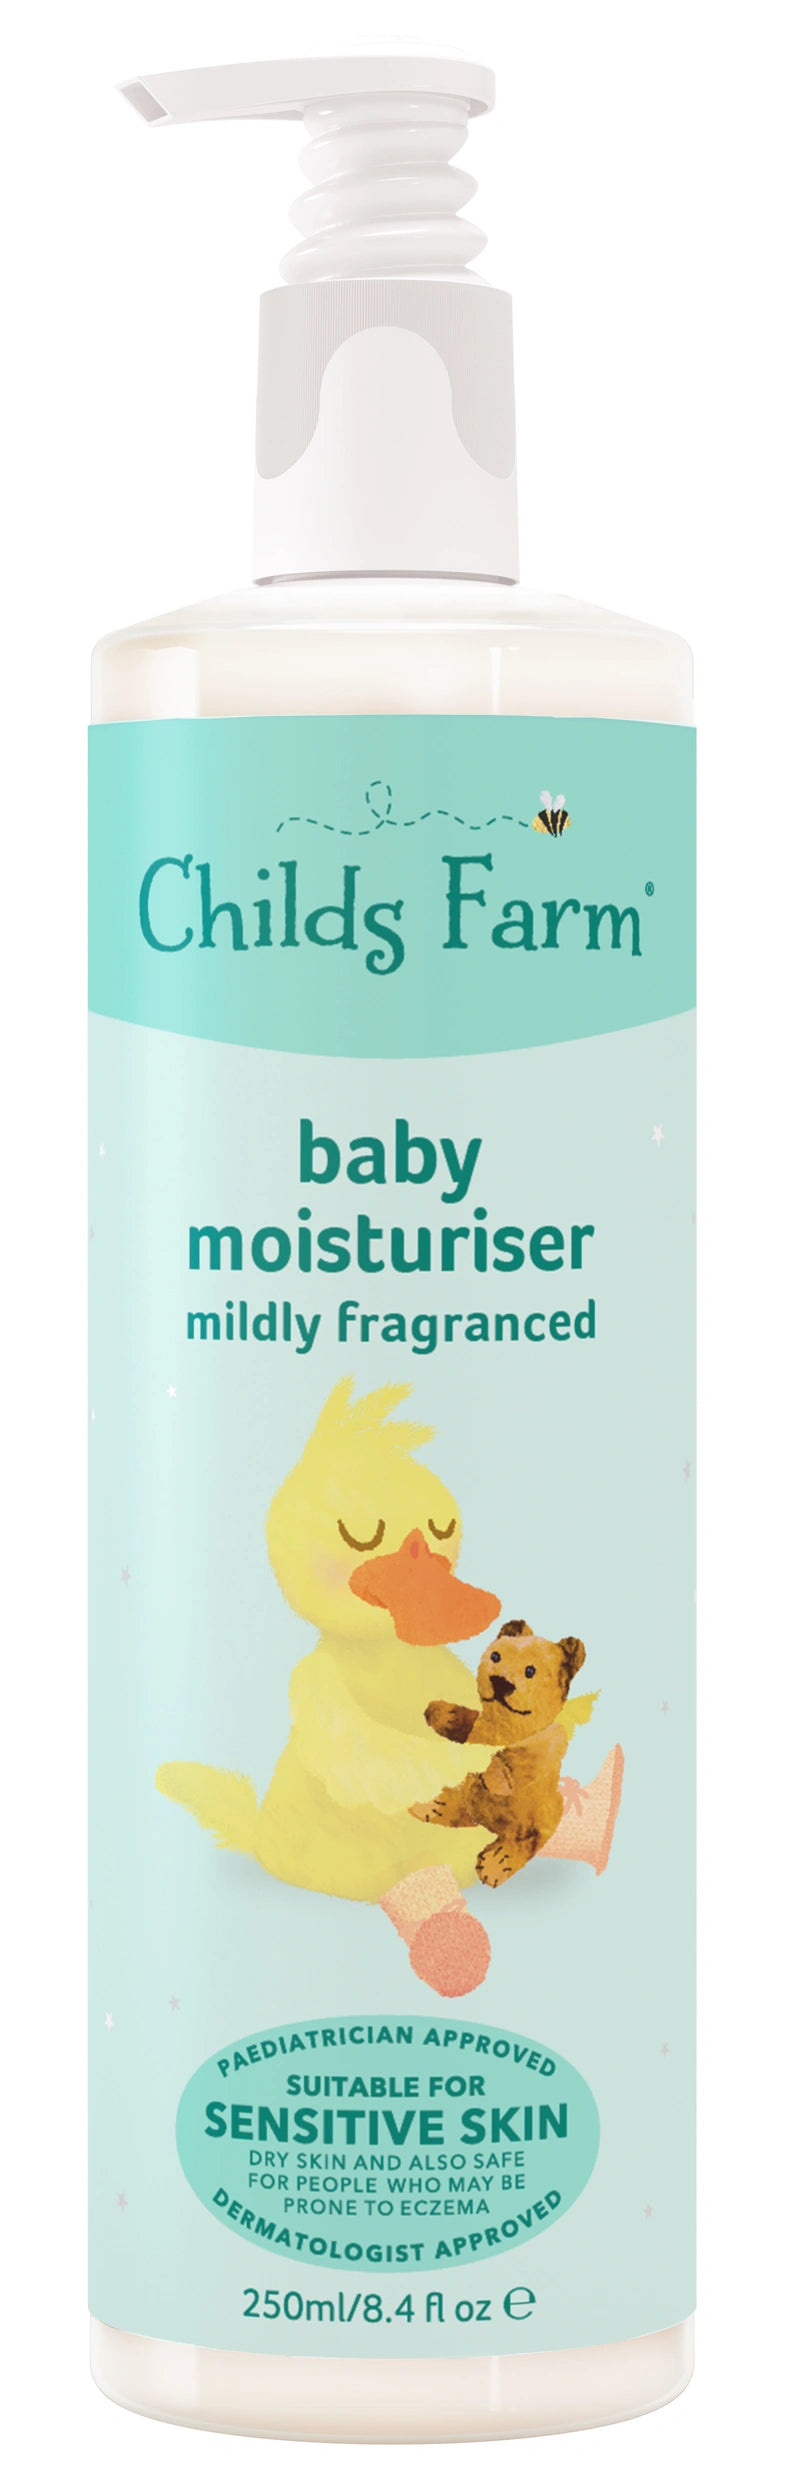 Childs Farm Baby Moisturiser 250ml Mild